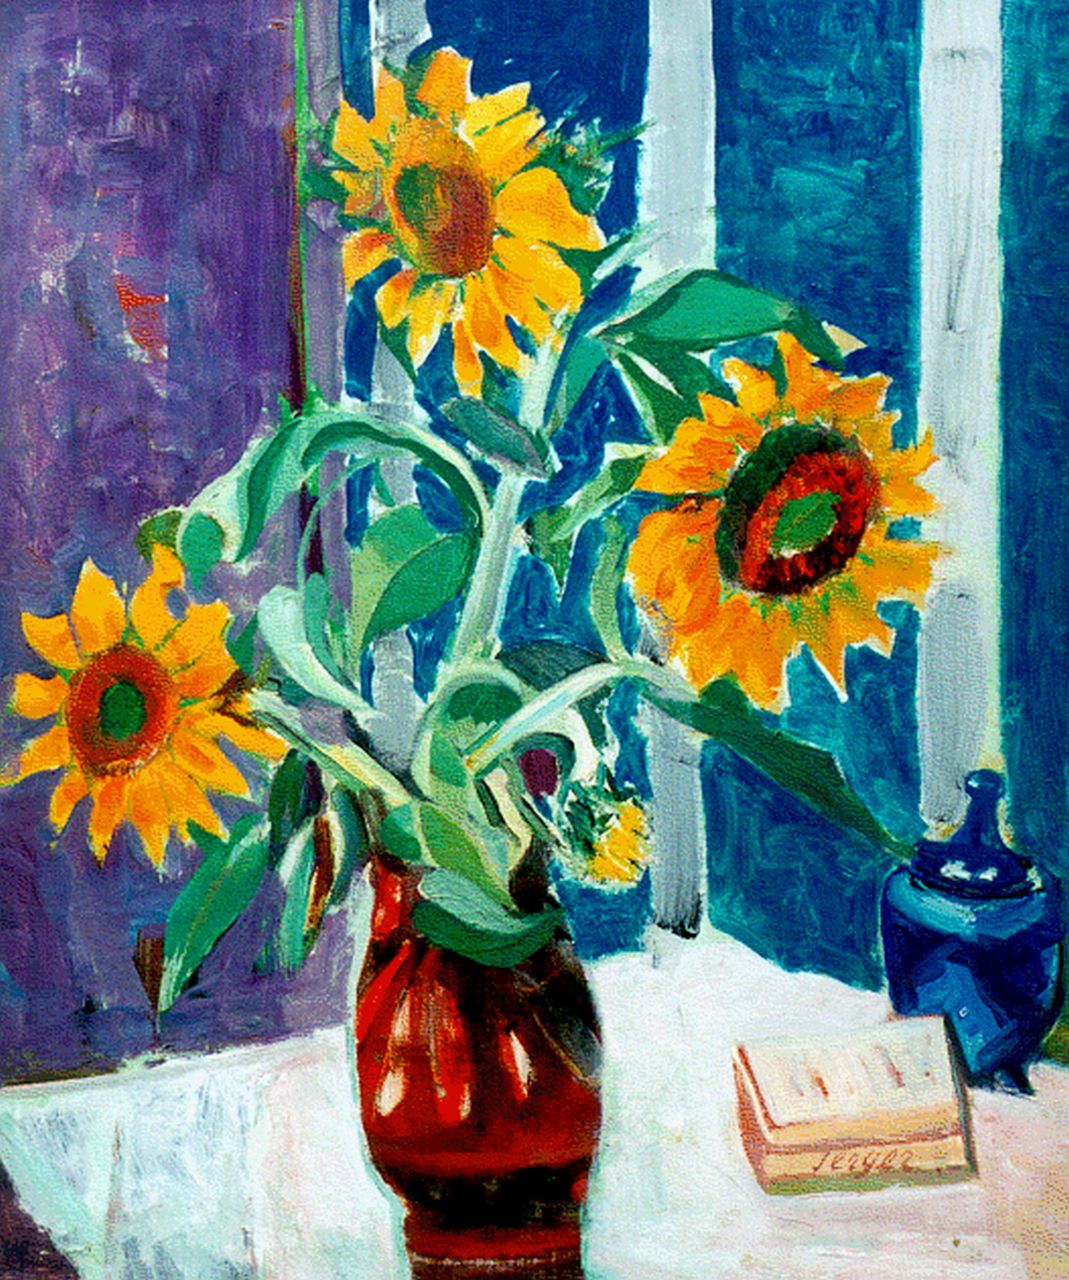 Serger F.B.  | Frederick Bedrich Serger, Sunflowers, Öl auf Leinwand 61,2 x 51,2 cm, signed l.r. und painted before 1939